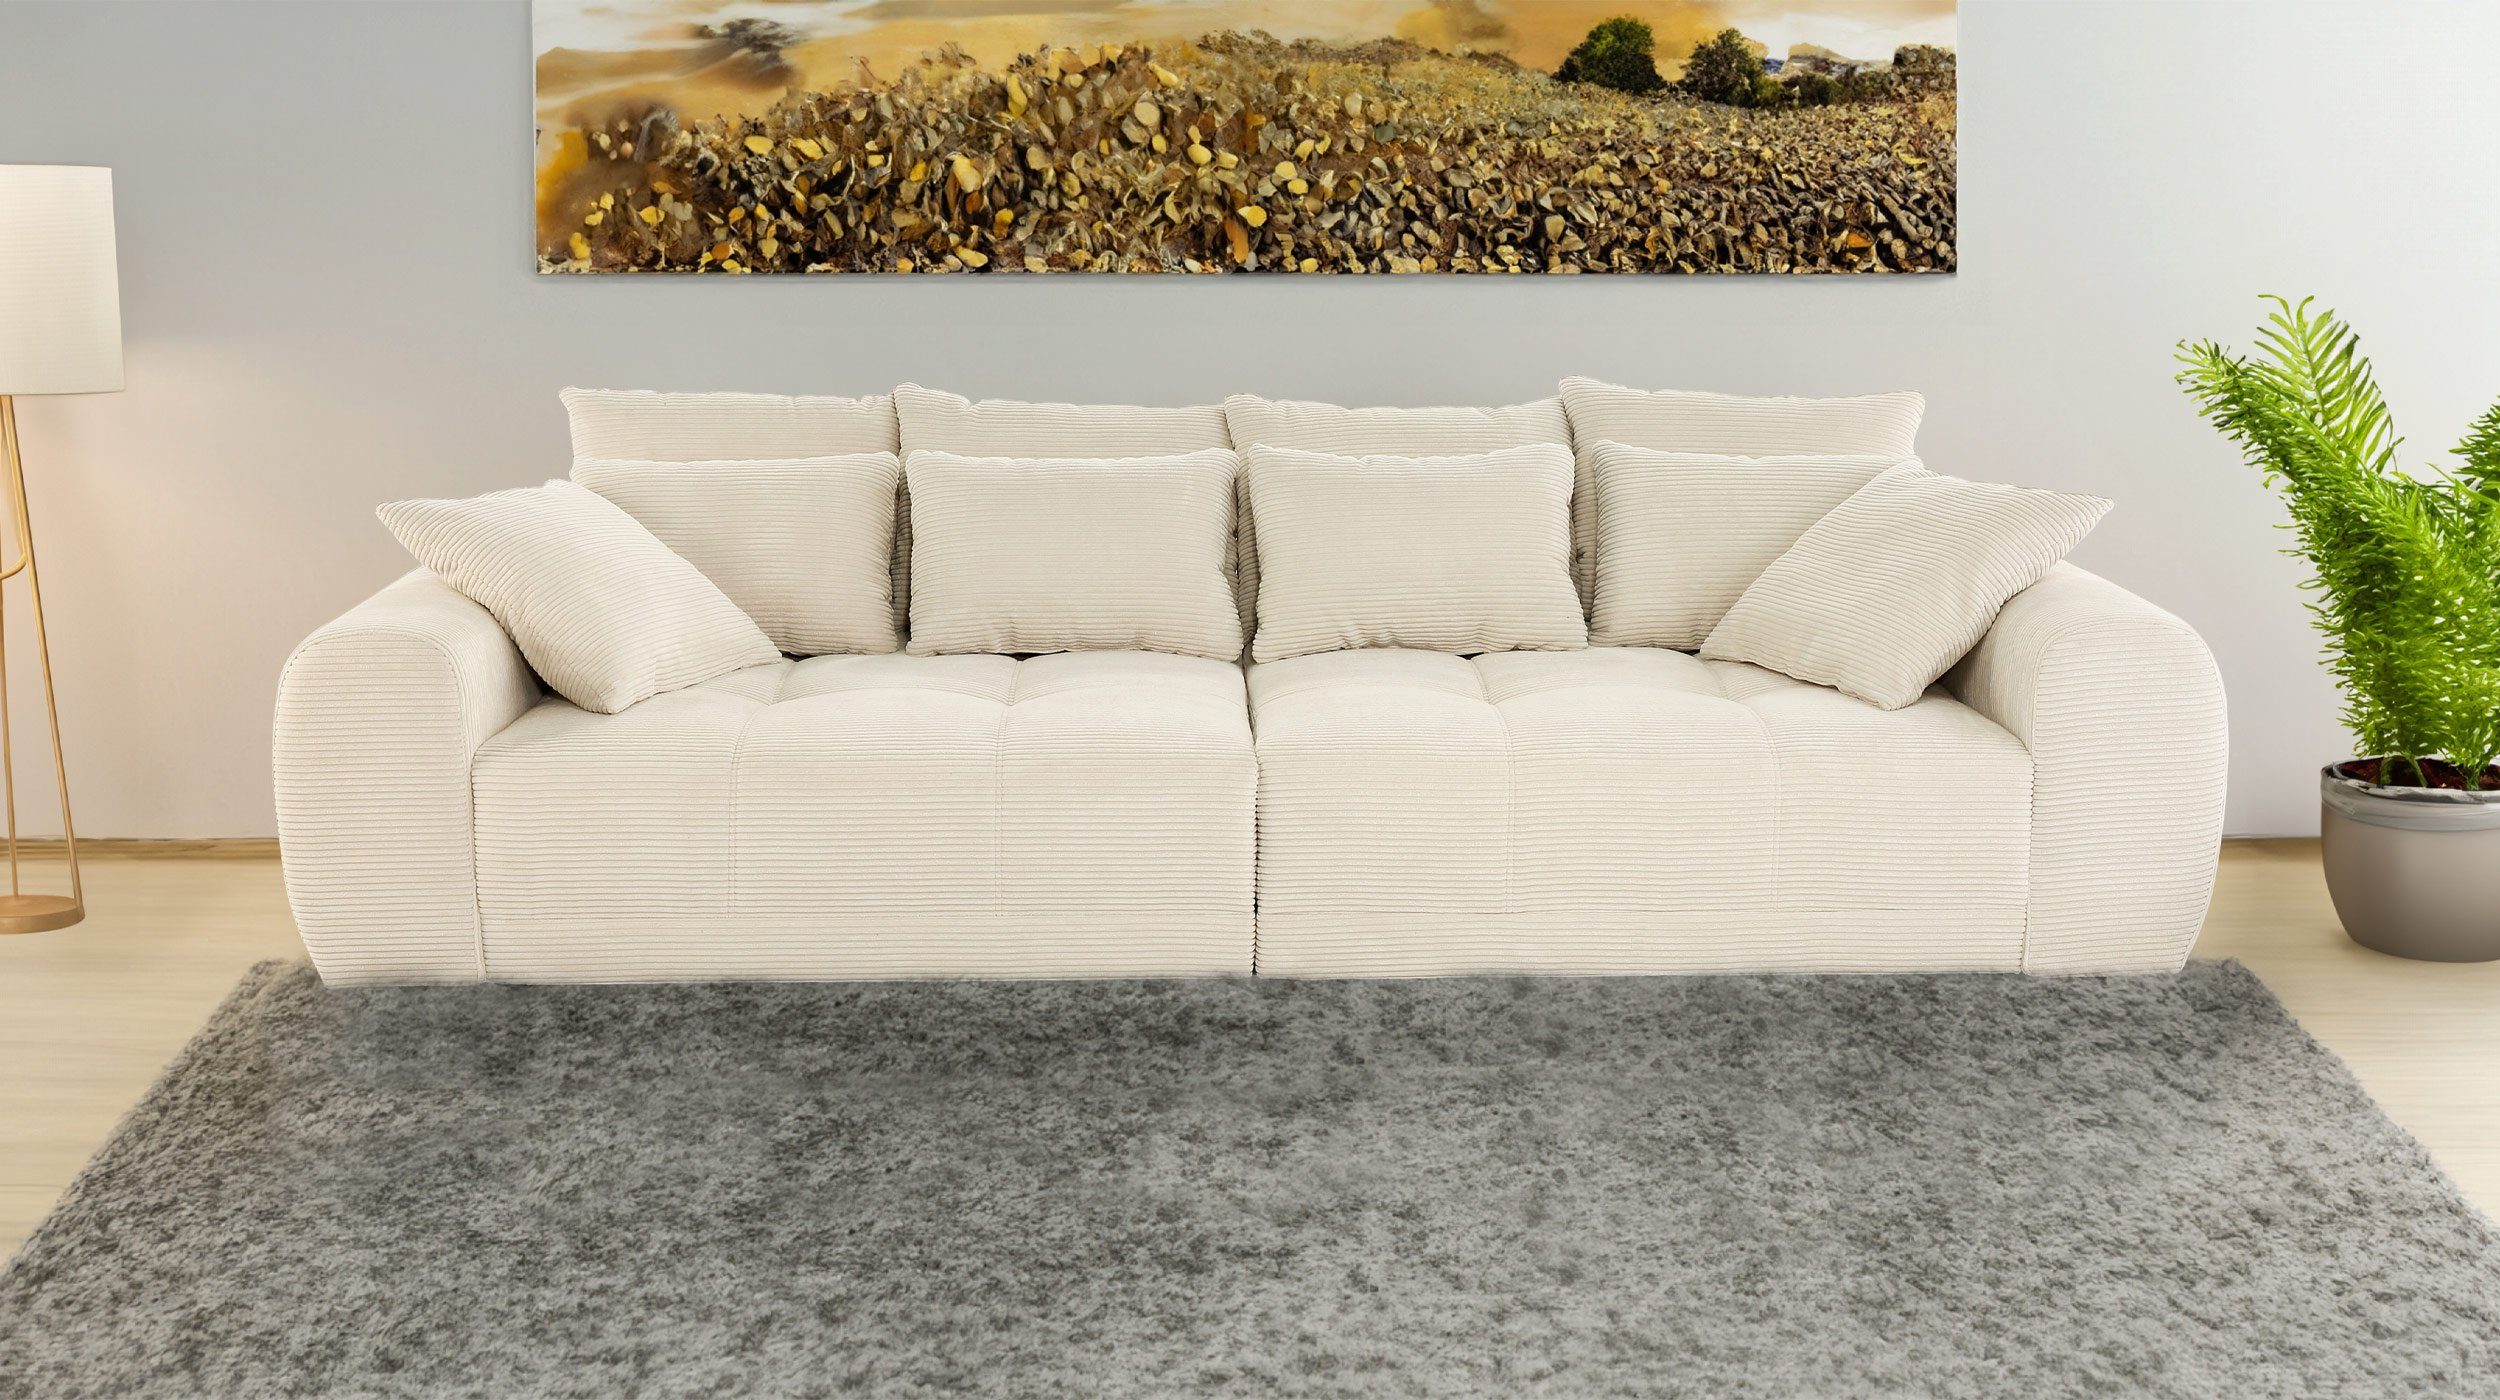 Massivart® Big-Sofa JANNI beige 308 4-Sitzer, cm Cordbezug Kissen, Federkernpolsterung, mittlere Zierkissen 4 Rückenkissen, 2 4